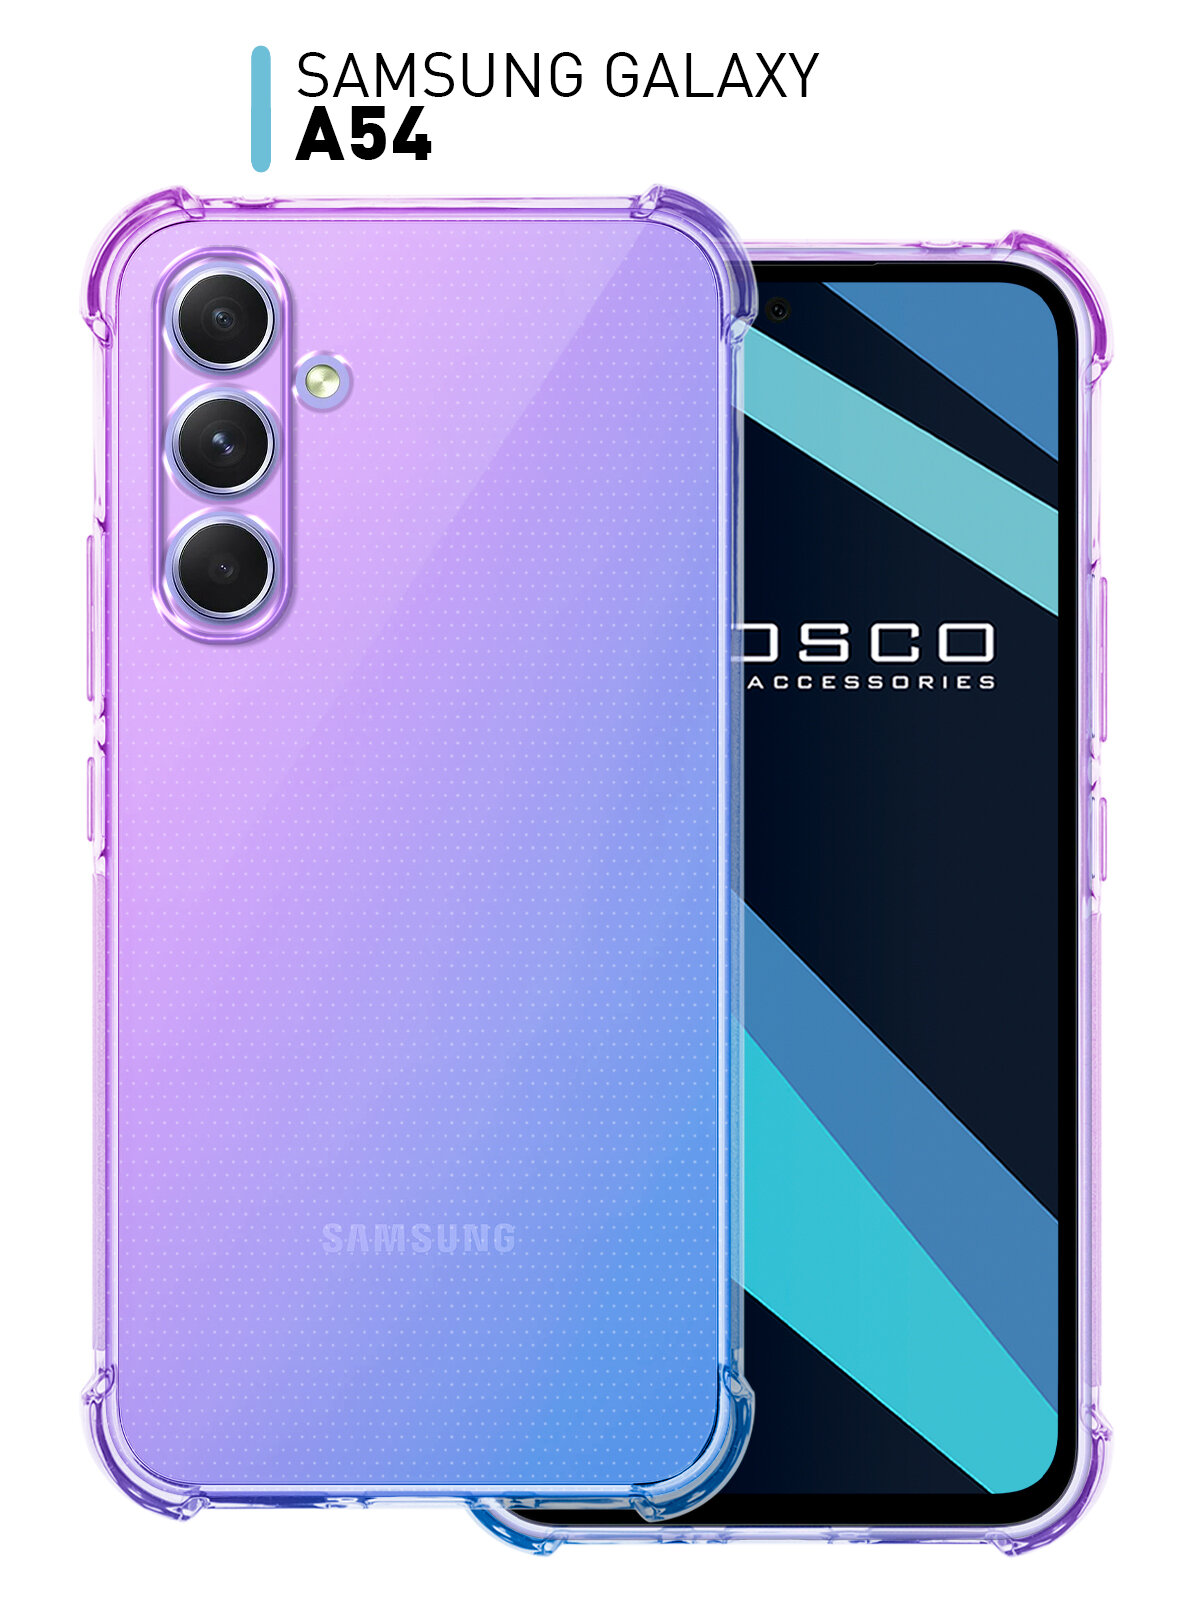 Противоударный чехол ROSCO на Samsung Galaxy A54 (Самсунг Галакси А54) усиленный силиконовый чехол защита модуля камер прозрачный фиолетовый синий